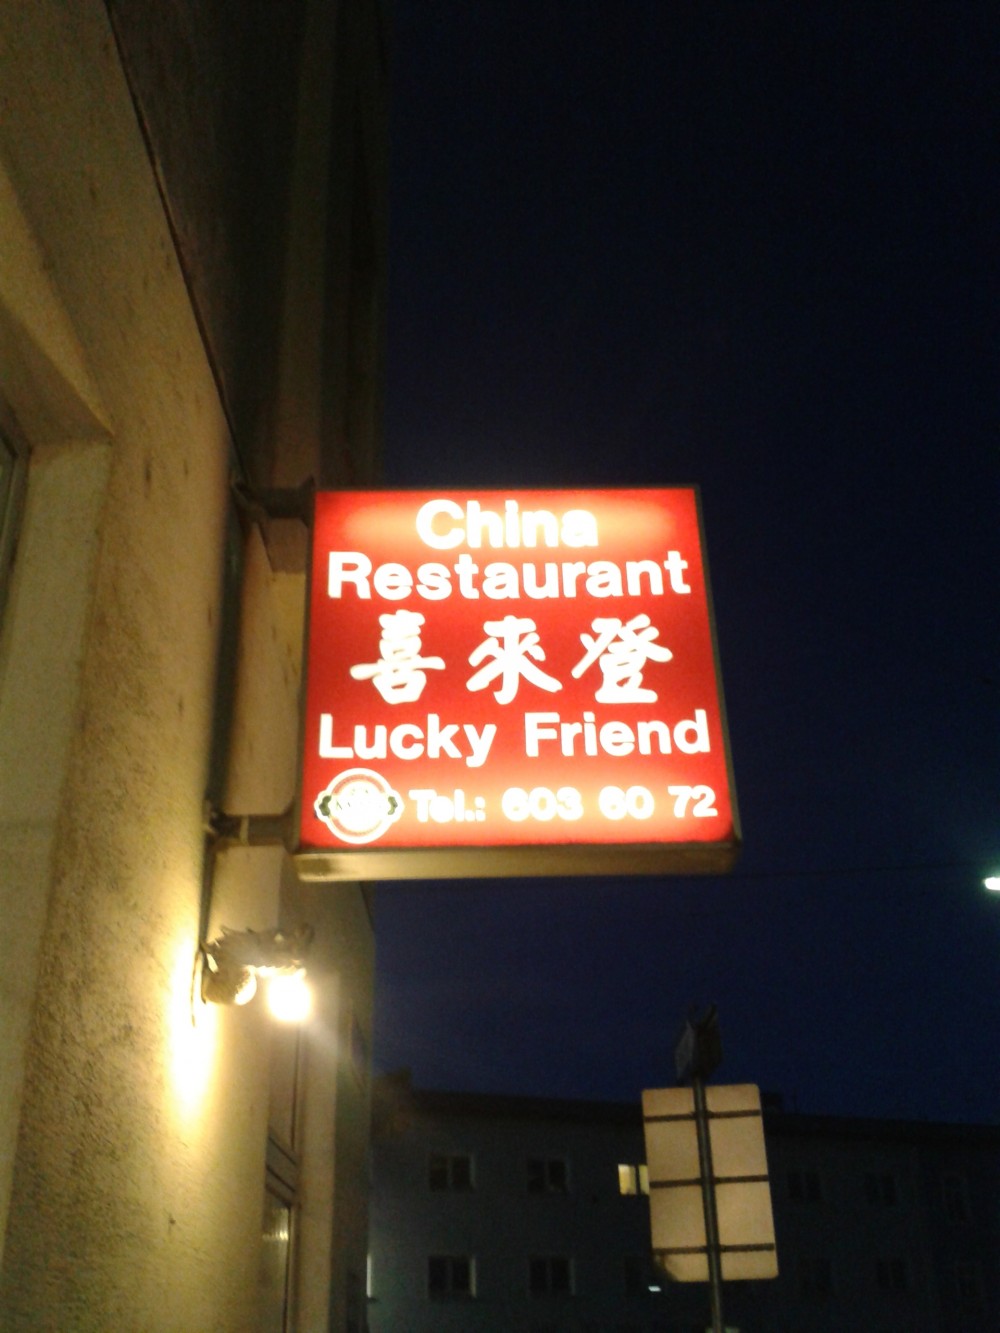 Lokalaußenwerbung - China-Restaurant Lucky Friend - Wien